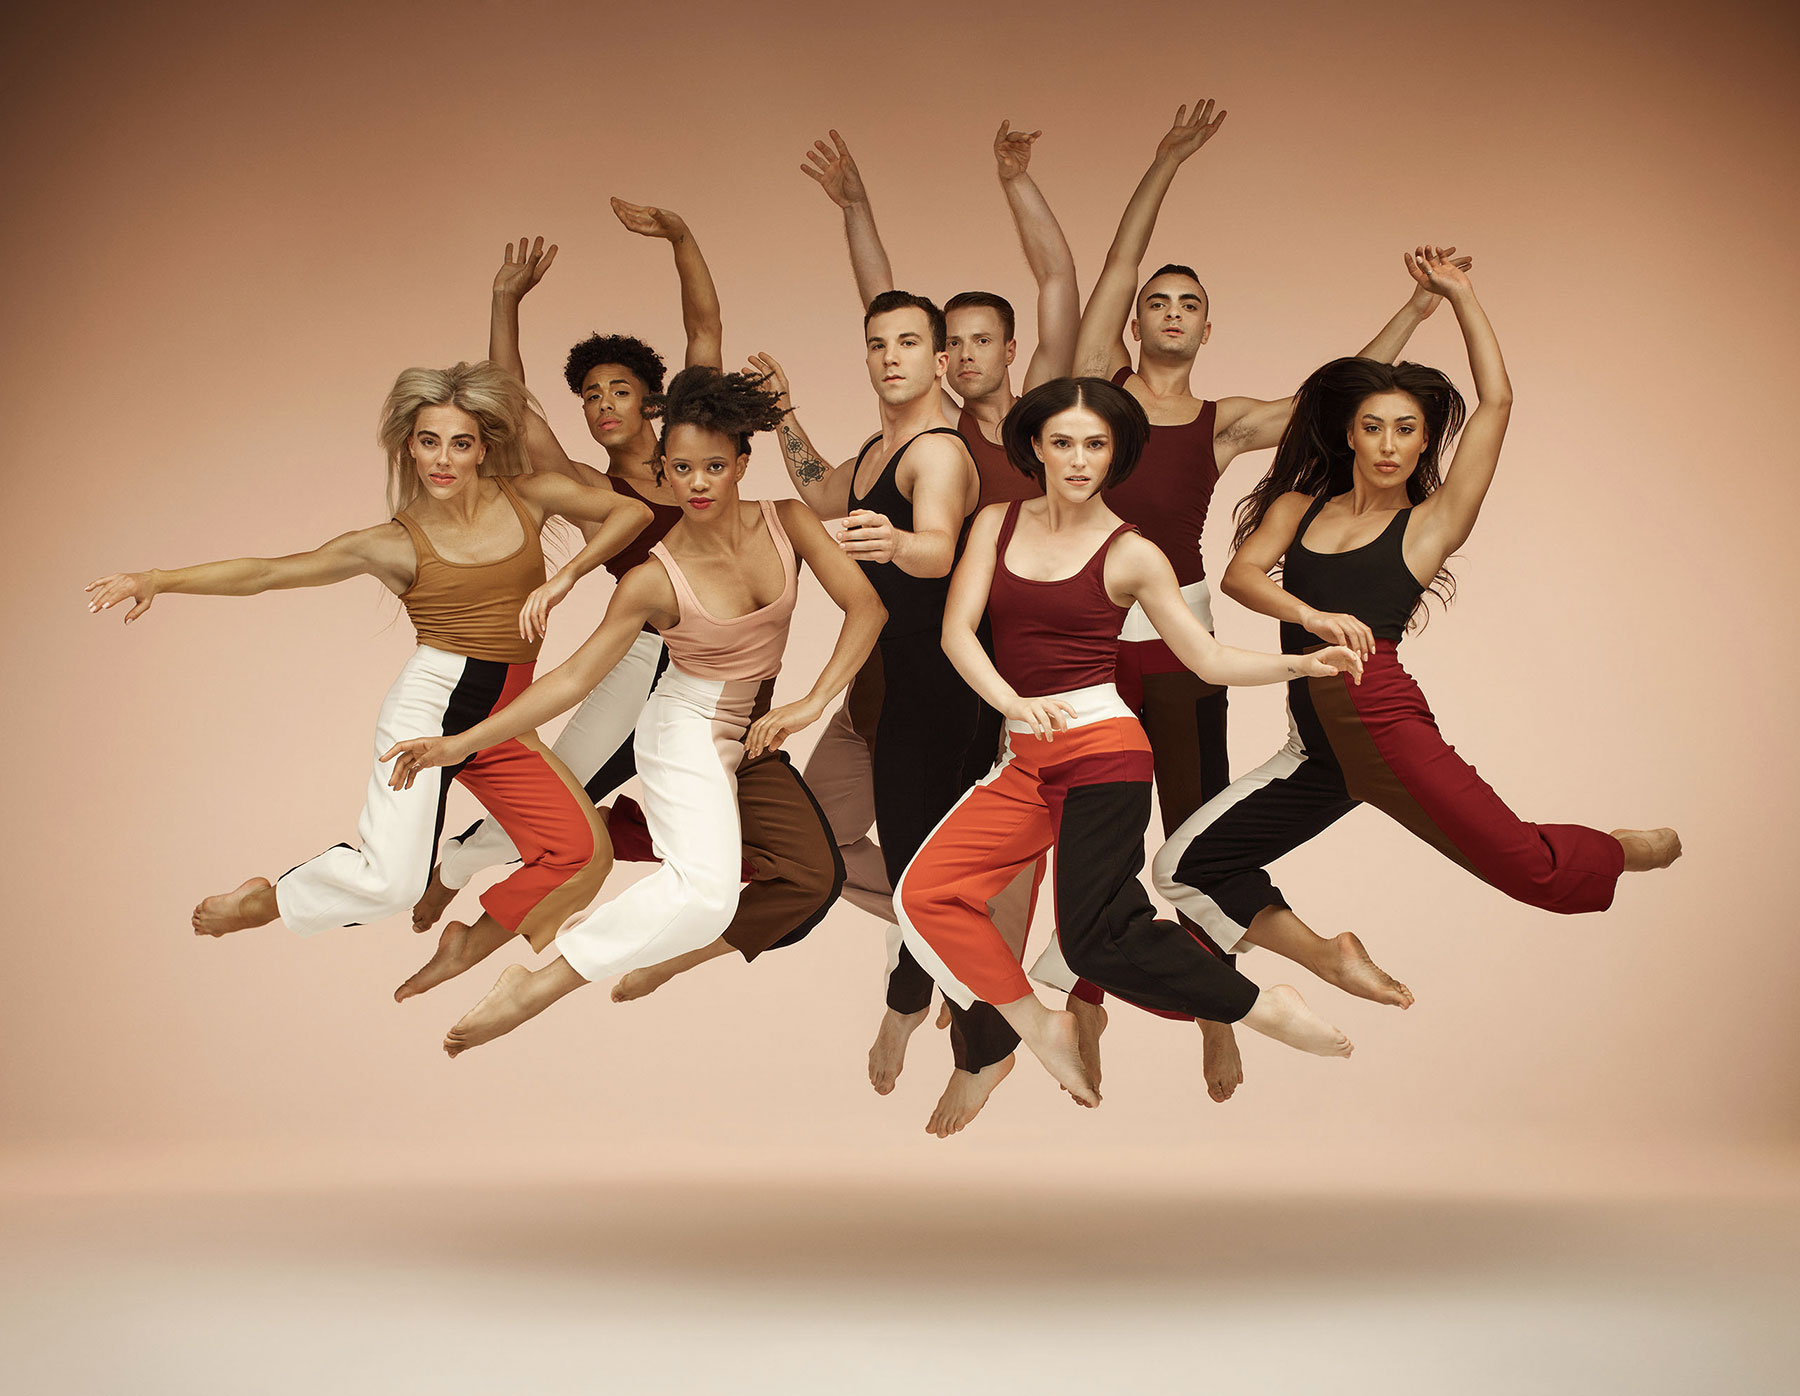 Contemporary dance group, результатов — 10 115: фотографии без лицензионных  платежей и стоковые изображения | Shutterstock